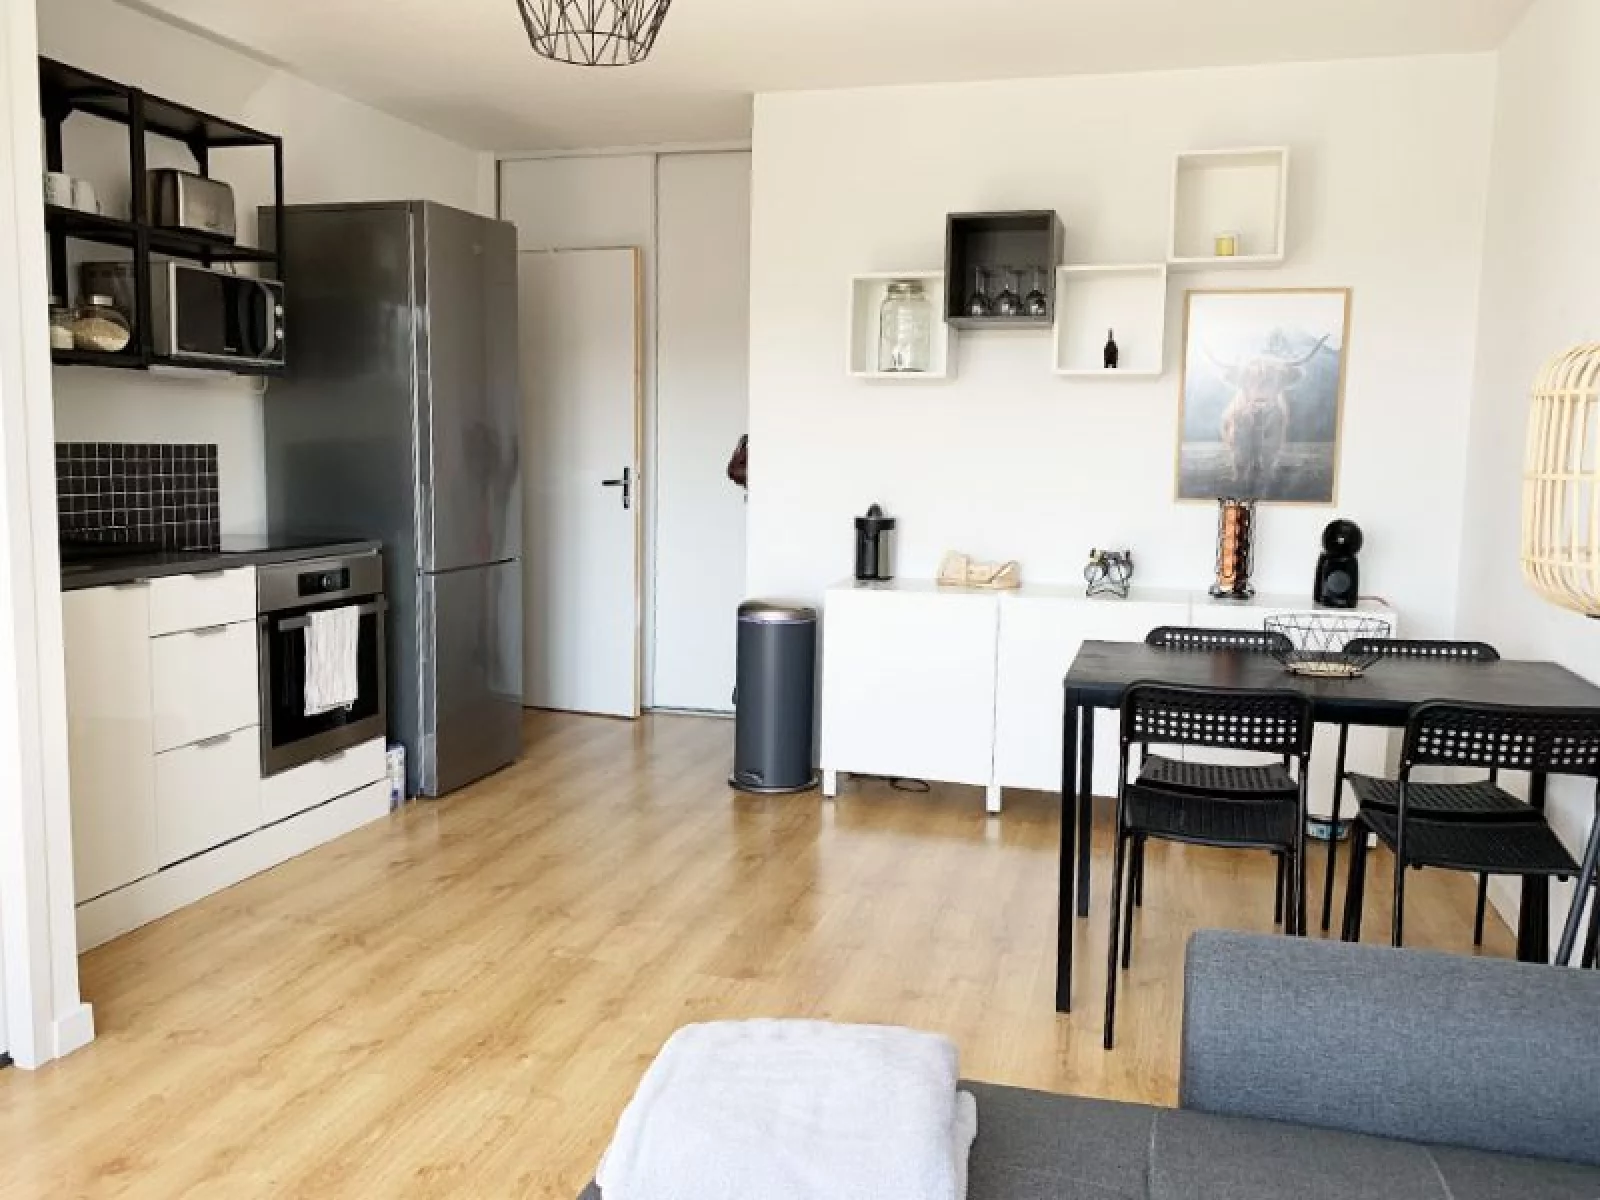  Location appartement meublé 2 pièces 35m² (Bordeaux - Bastide)